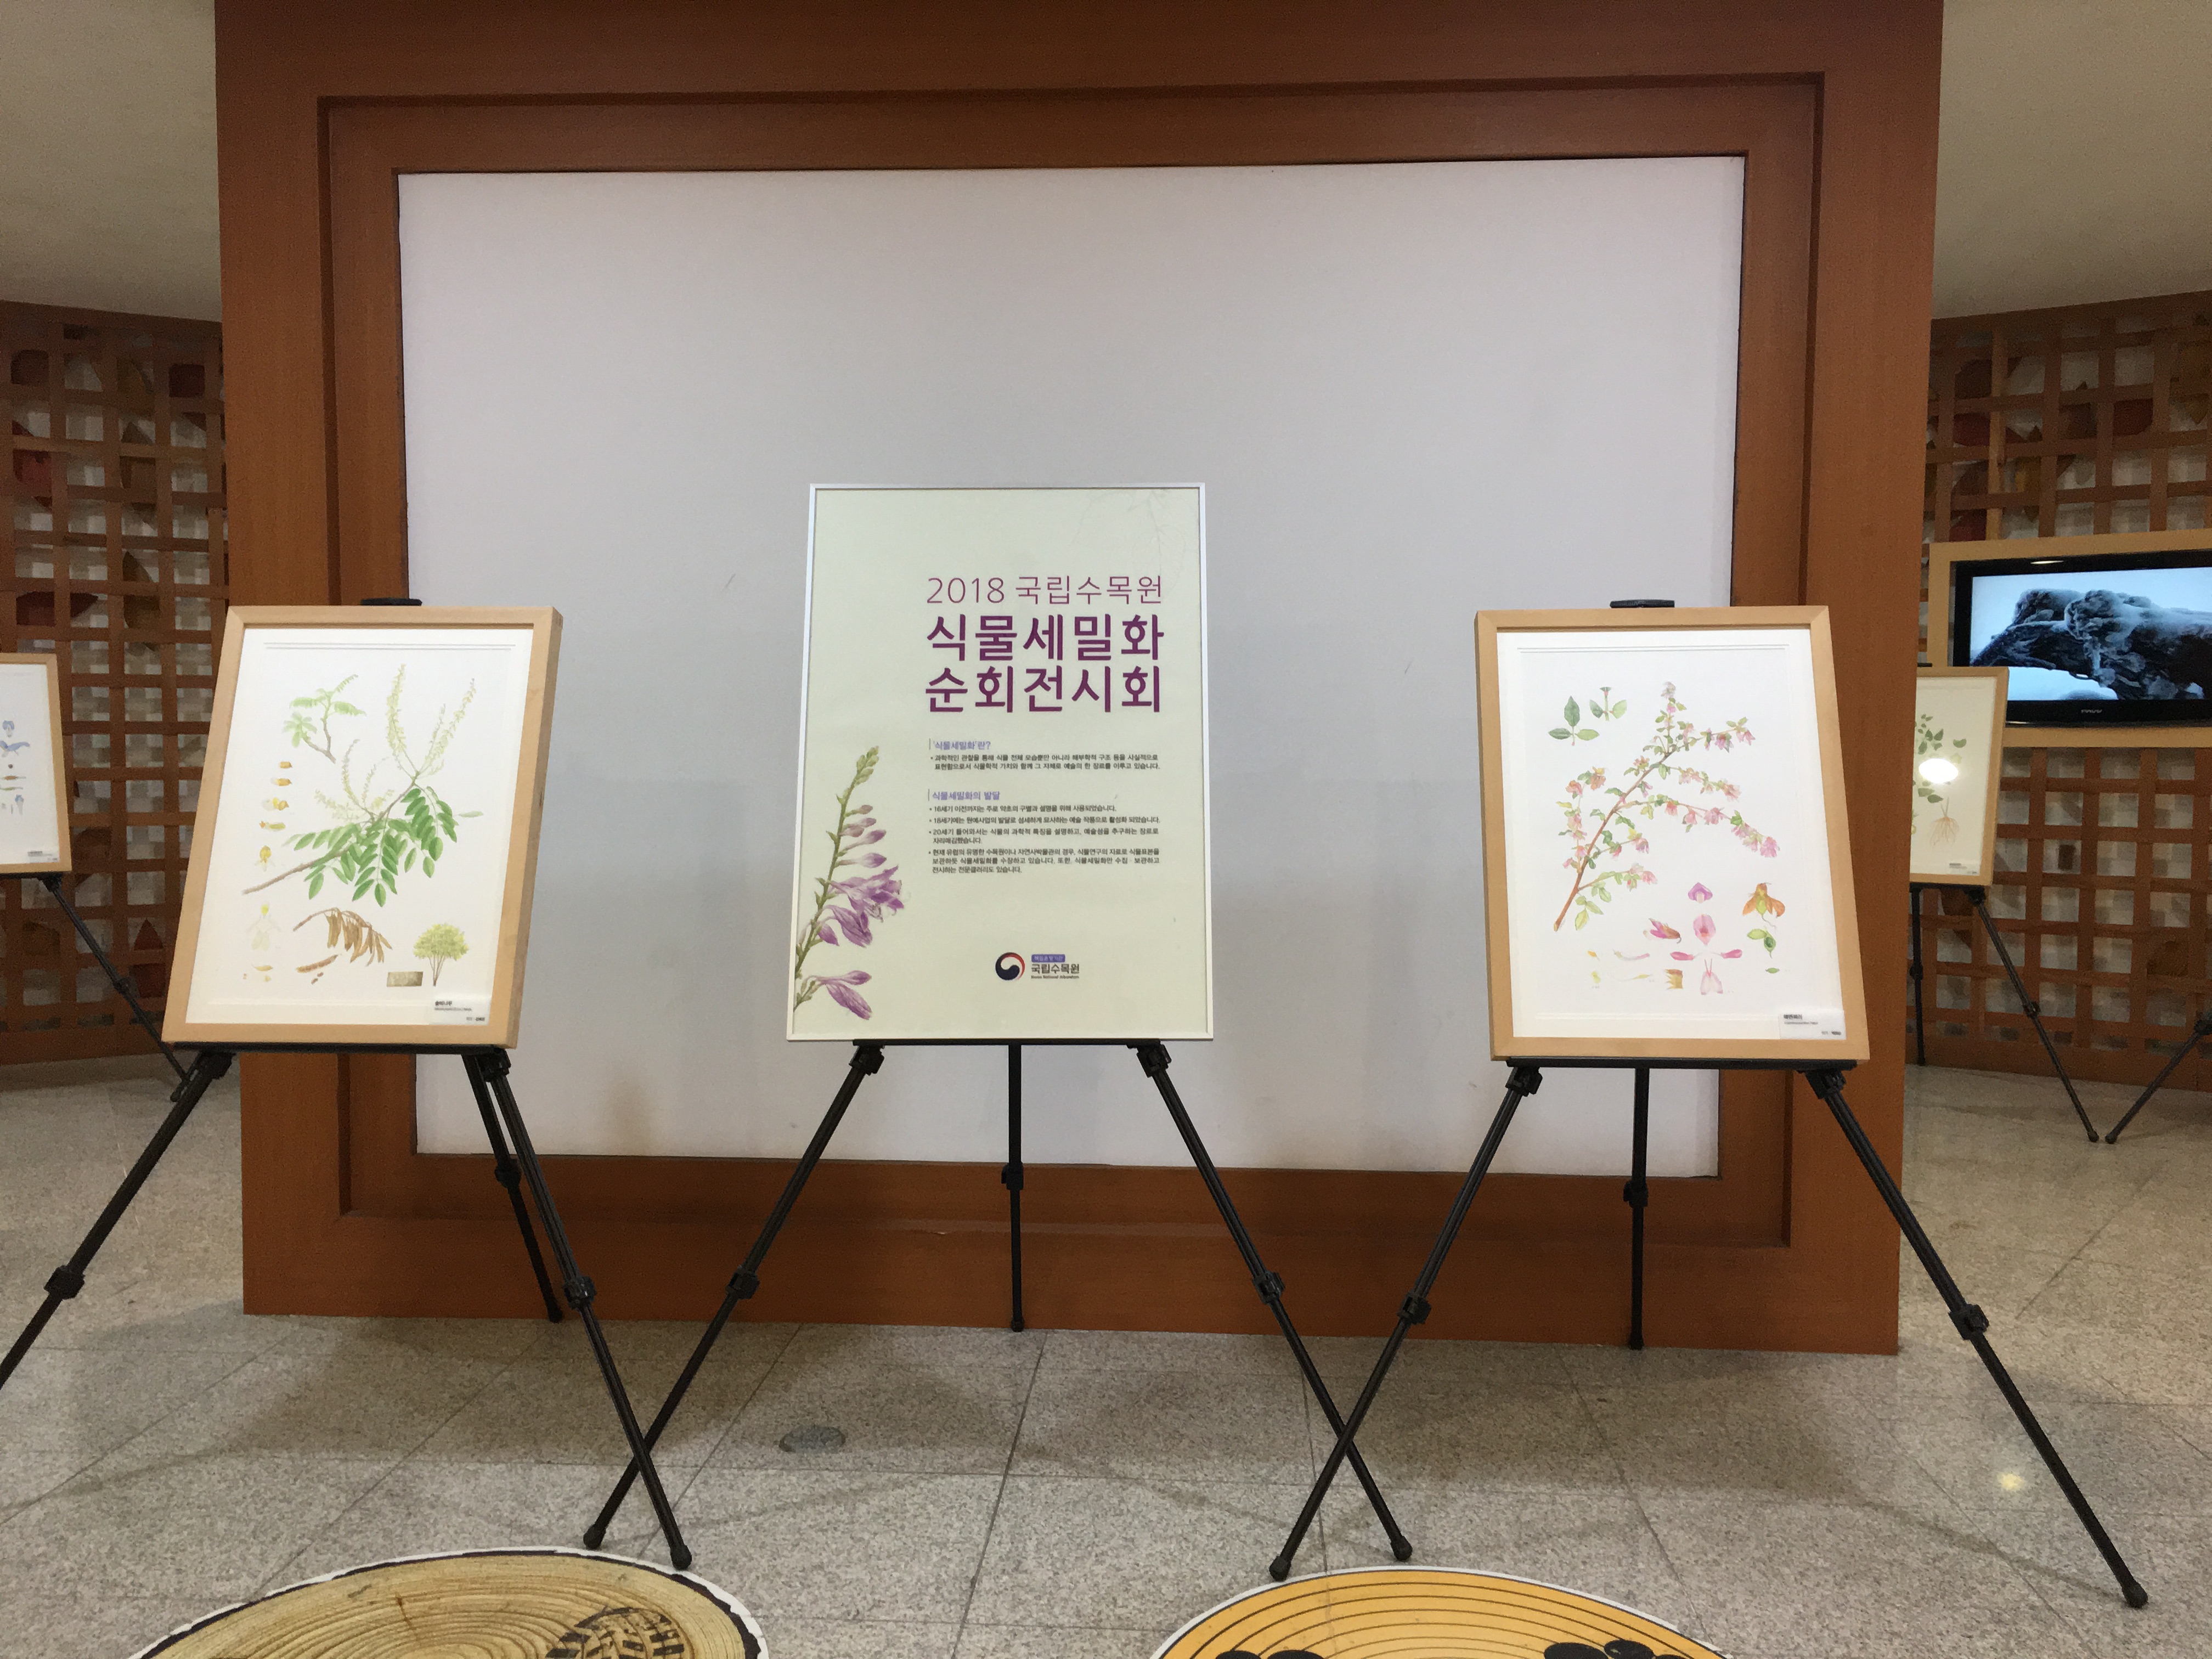 2018년 자생식물 세밀화 전시회 개최